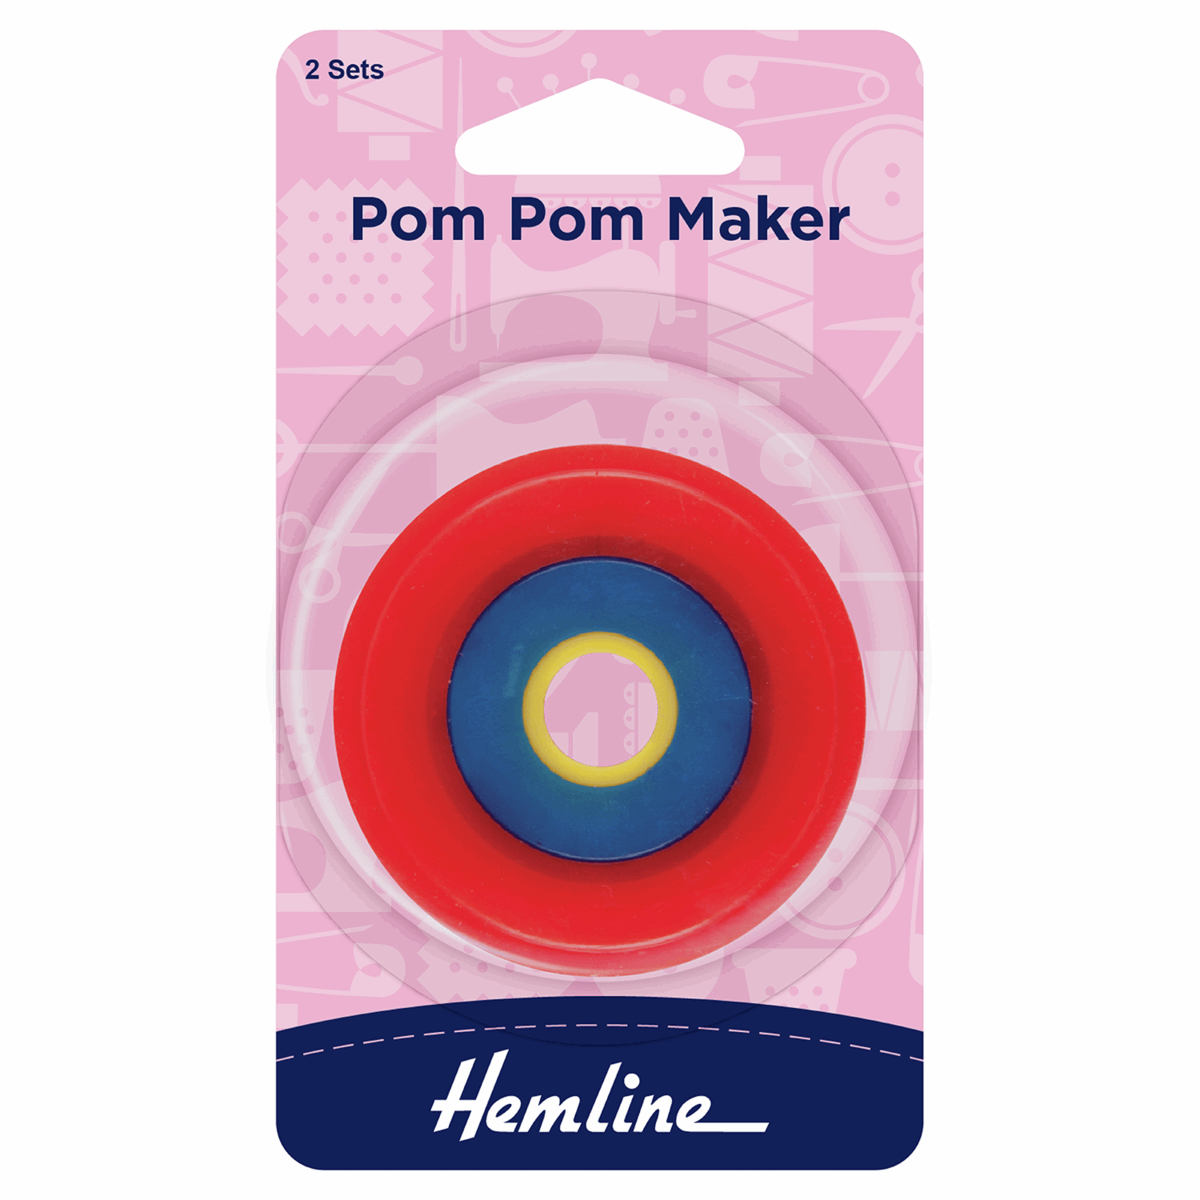 Pom Pom Maker - 2 Sets